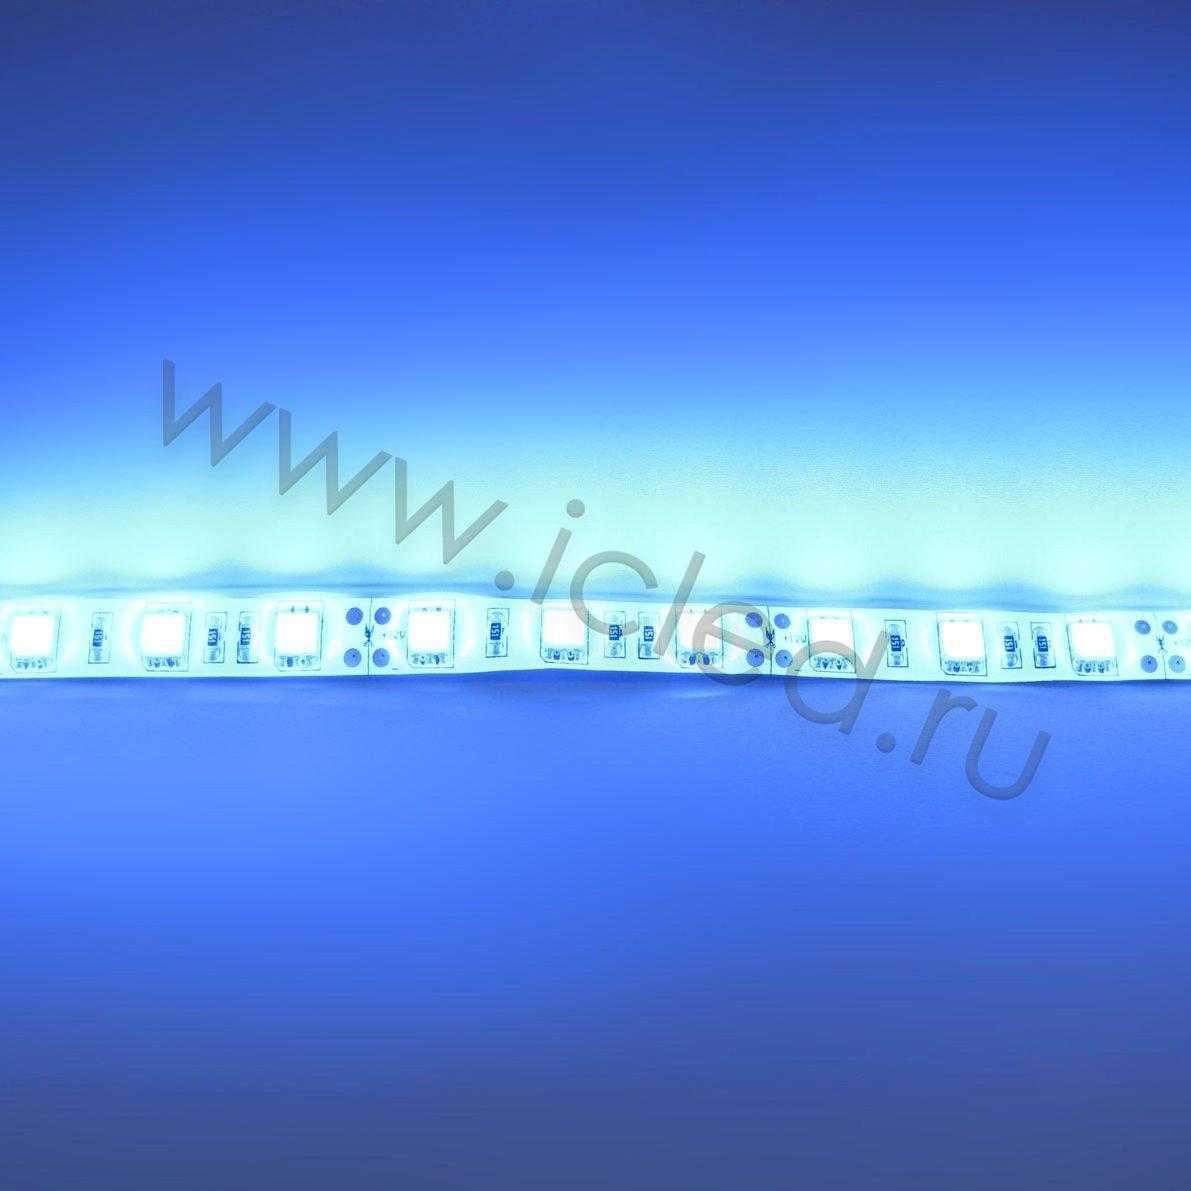 Влагозащищенные светодиодные ленты Светодиодная лента Standart PRO class, 5050, 60led/m, Blue, 12V, IP65 Icled